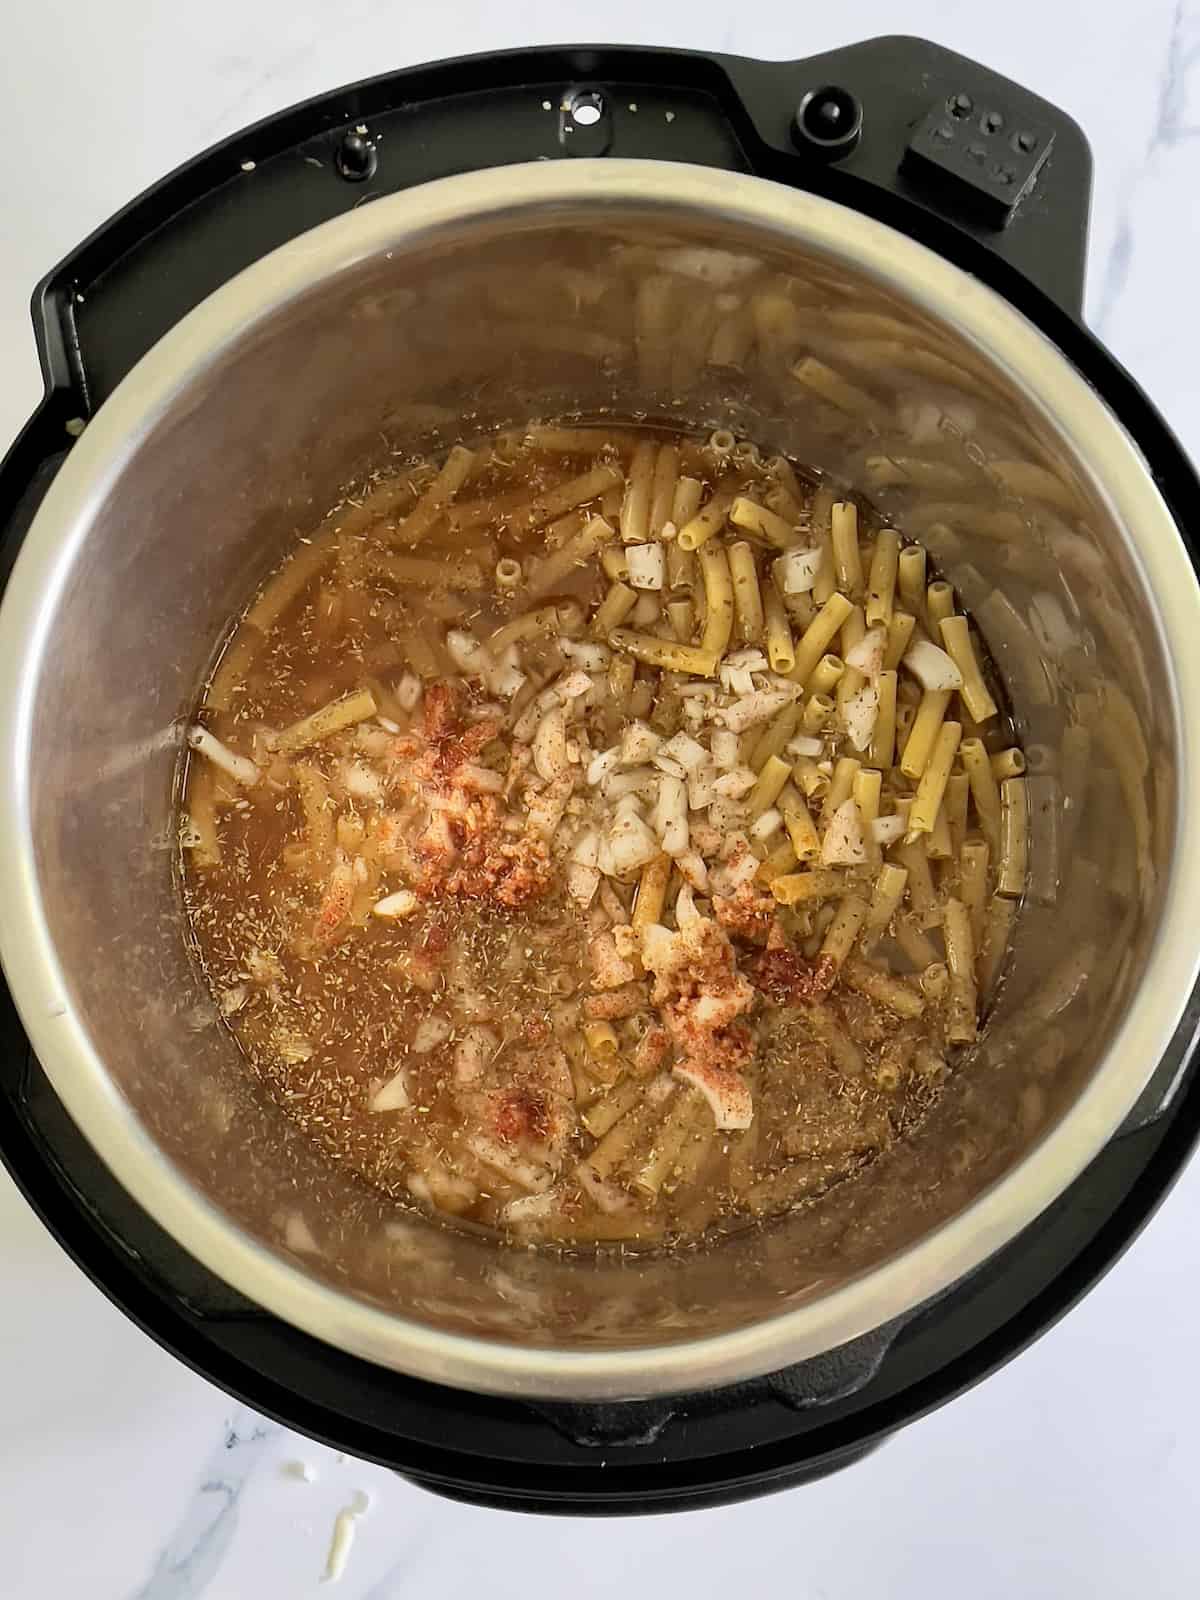 ziti, broth, cajun spices in the pressure cooker